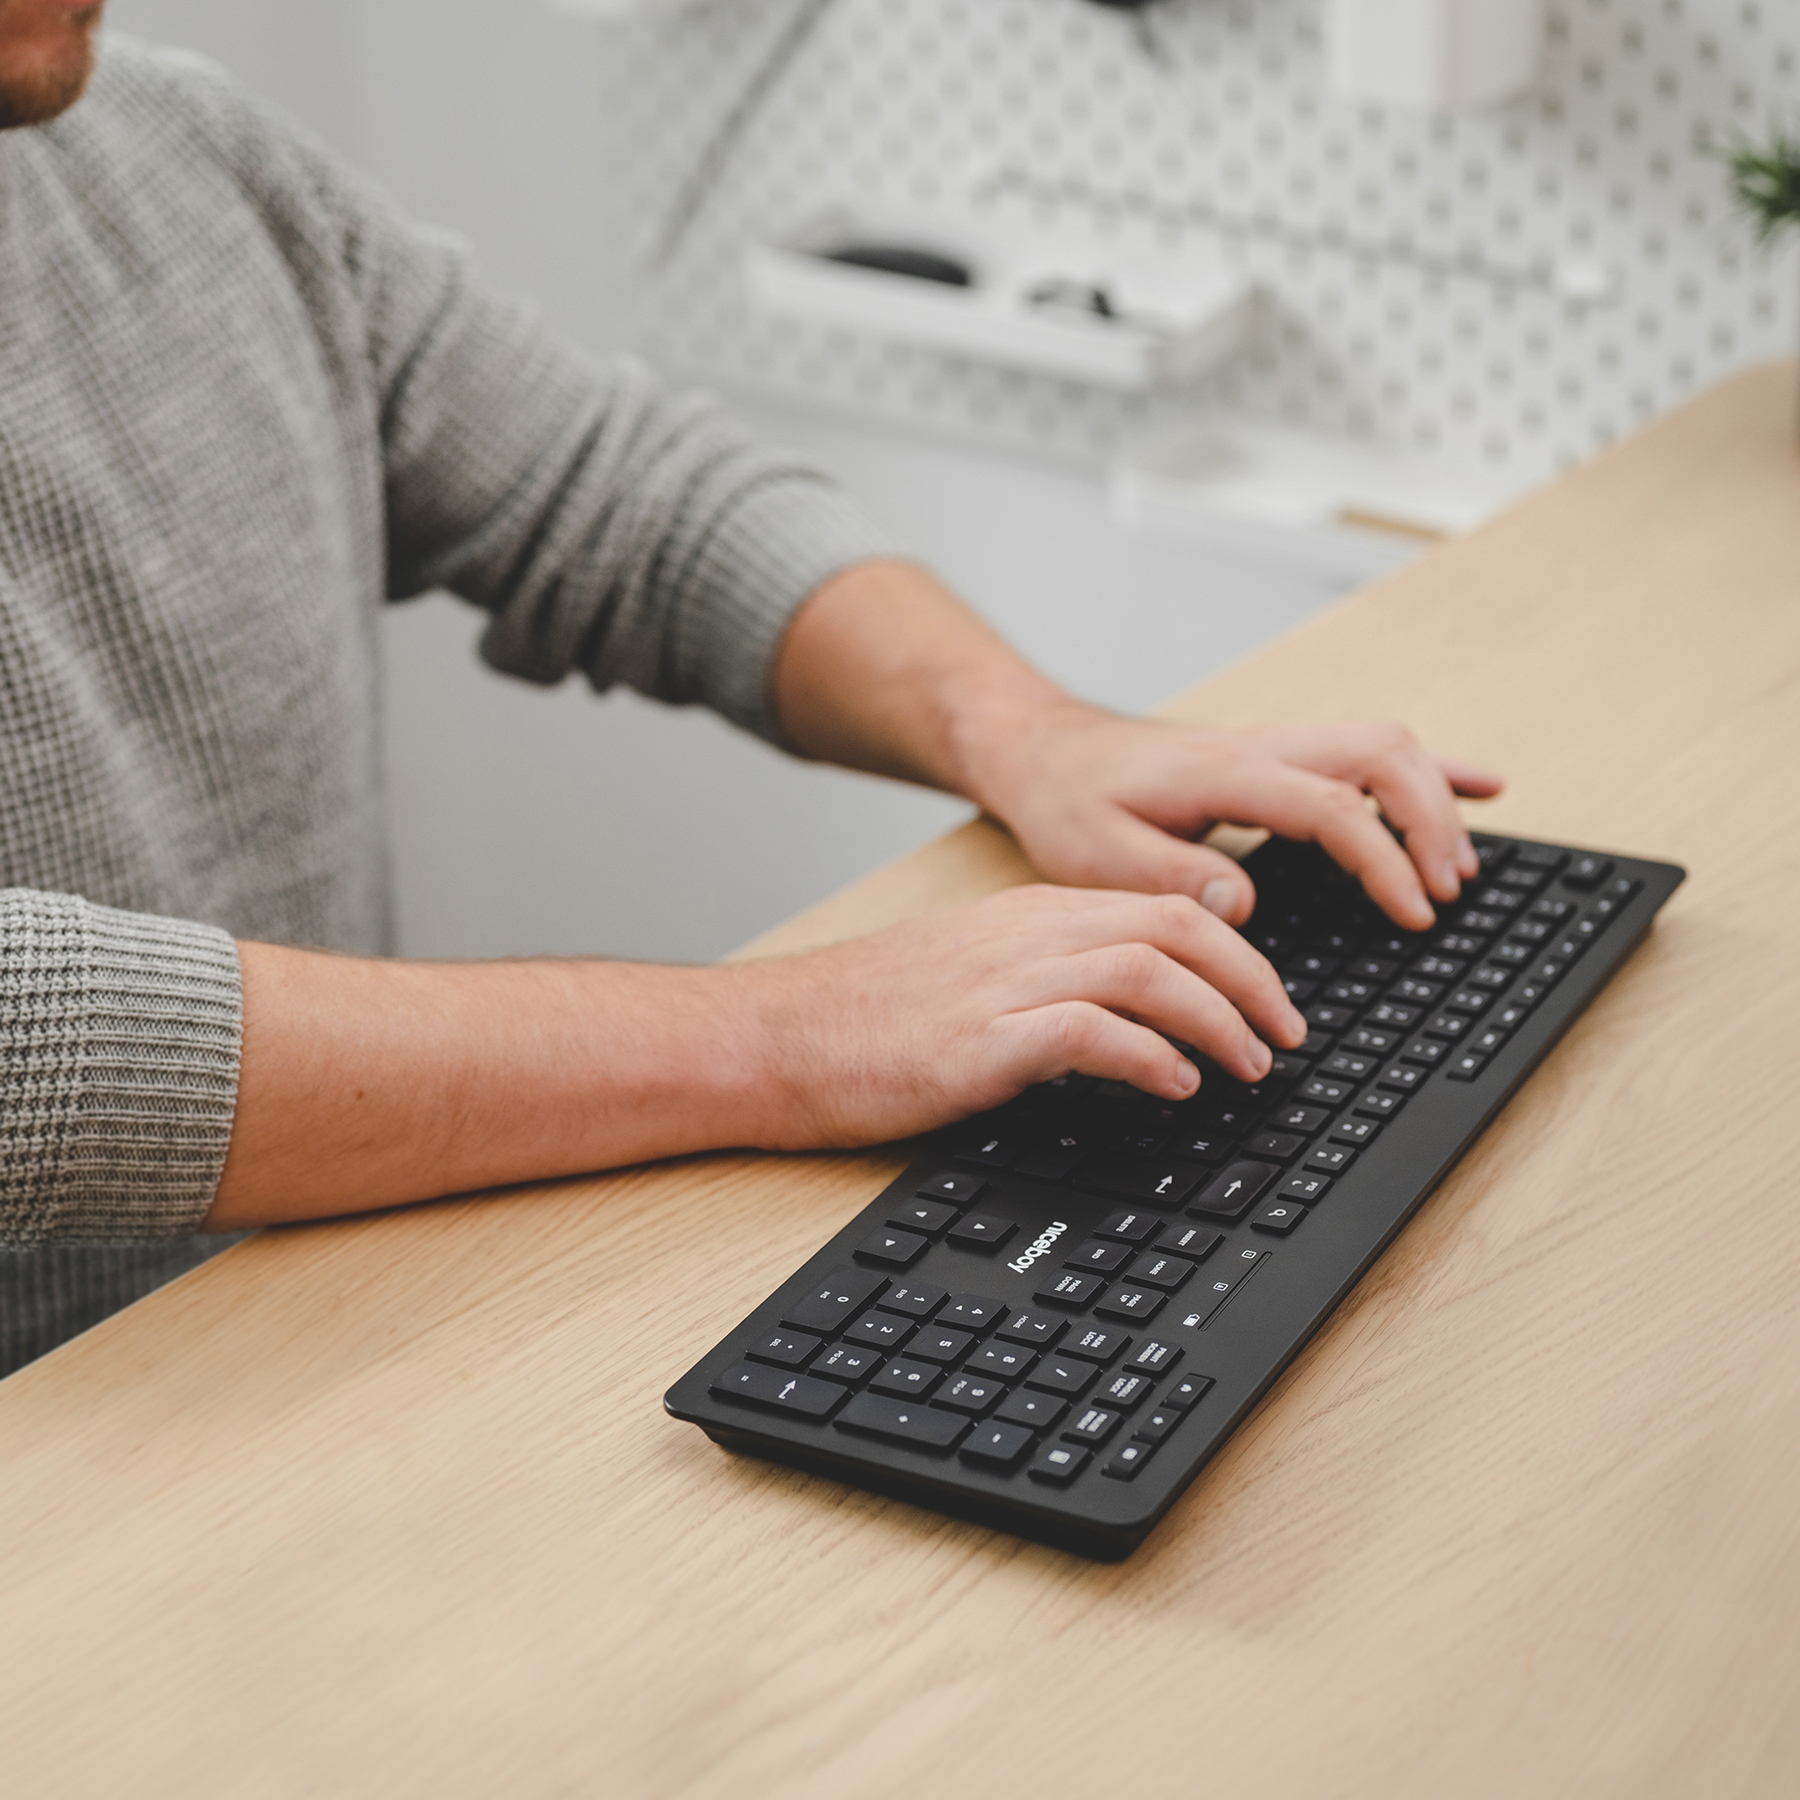 Bezdrôtová klávesnica Niceboy Office K10 vám pomôže navýšiť produktivitu práce aj bez neprehľadnej spleti káblov.